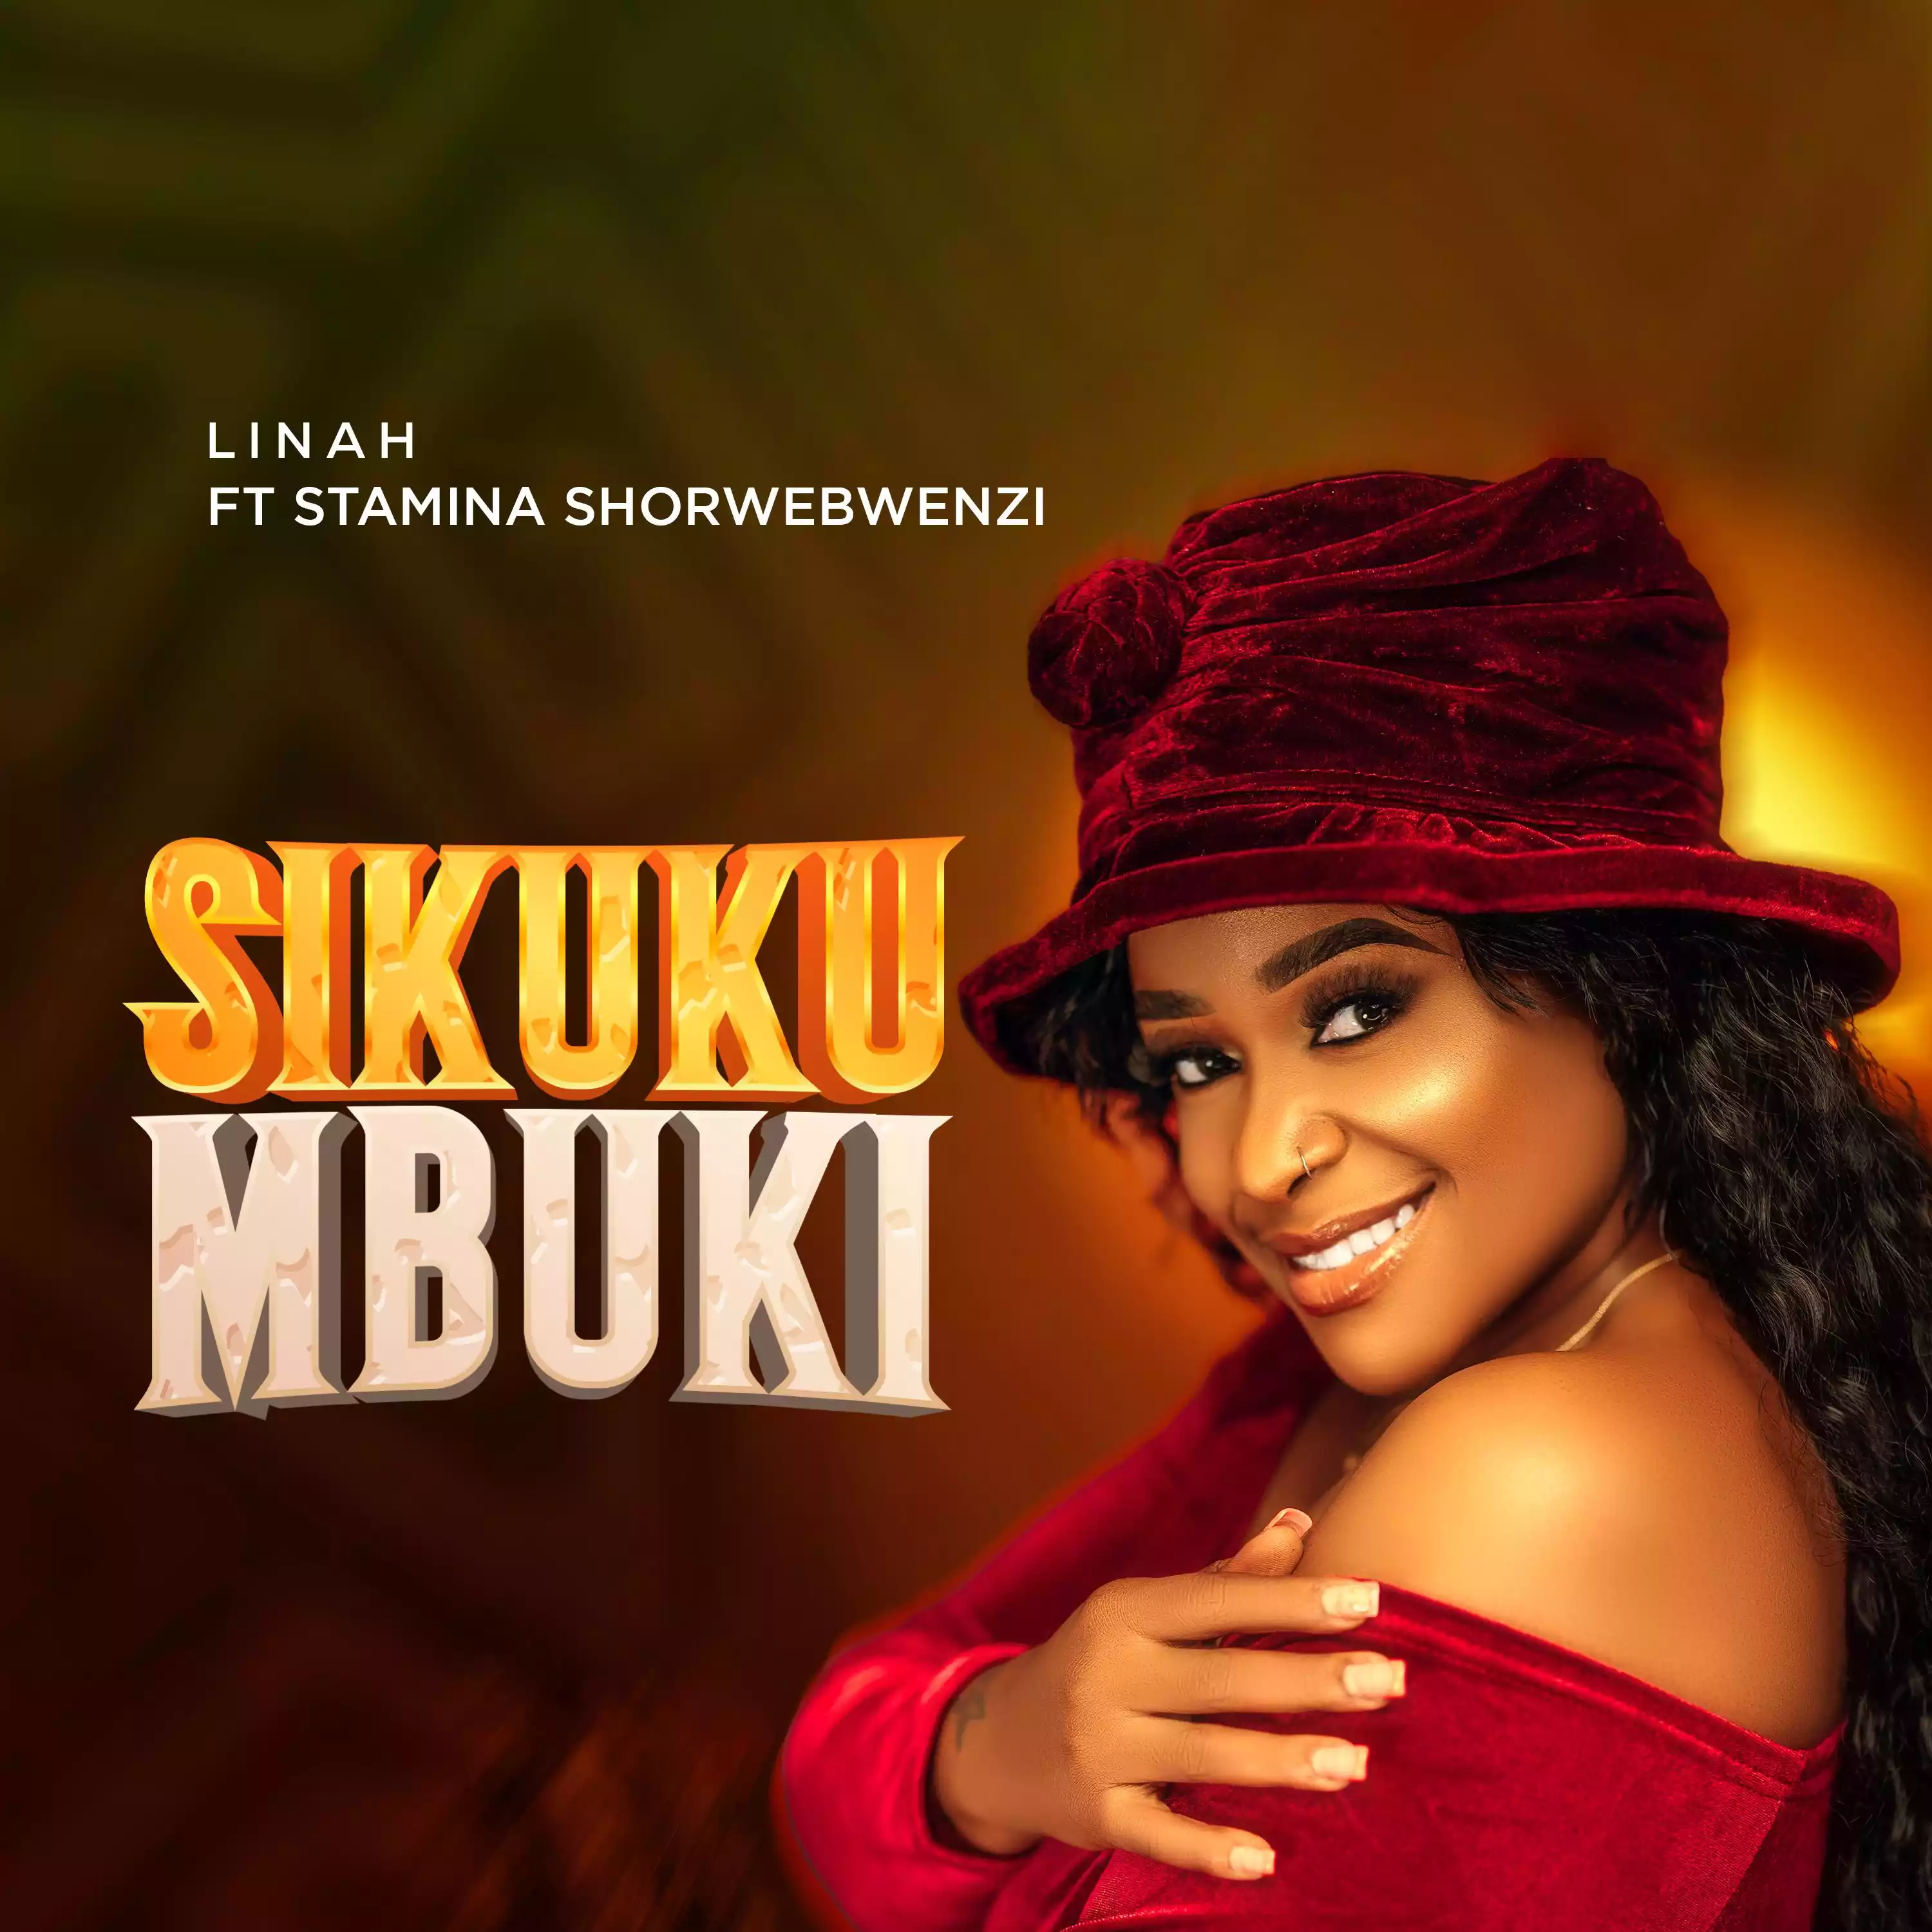 Linah ft Stamina - Sikukumbuki Mp3 Download